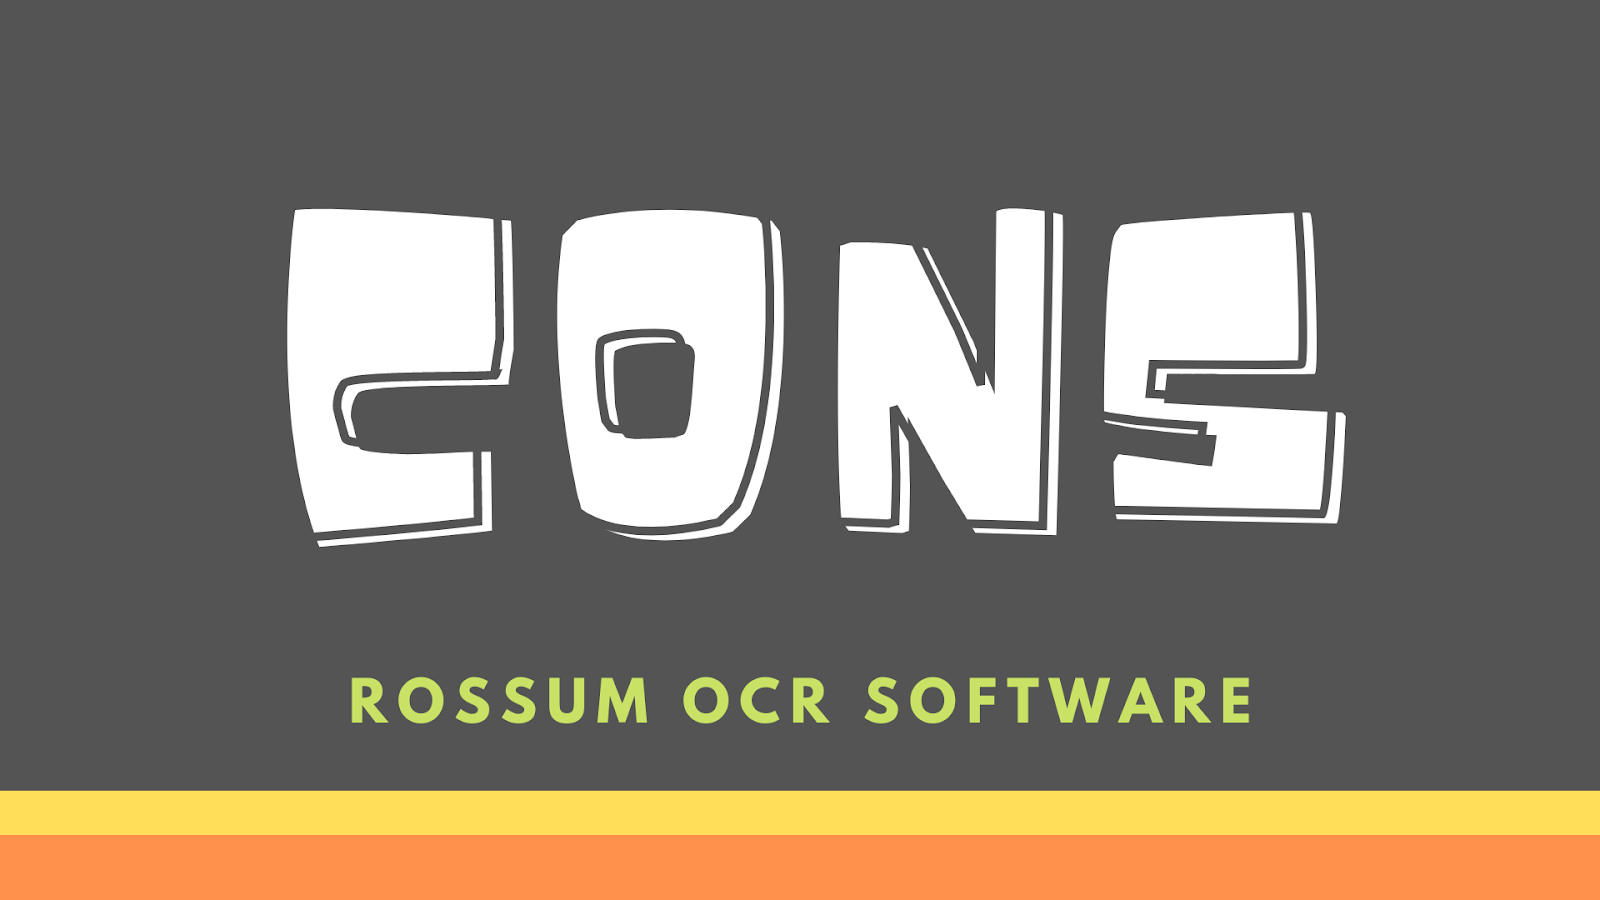 Rossum OCR Software Cons